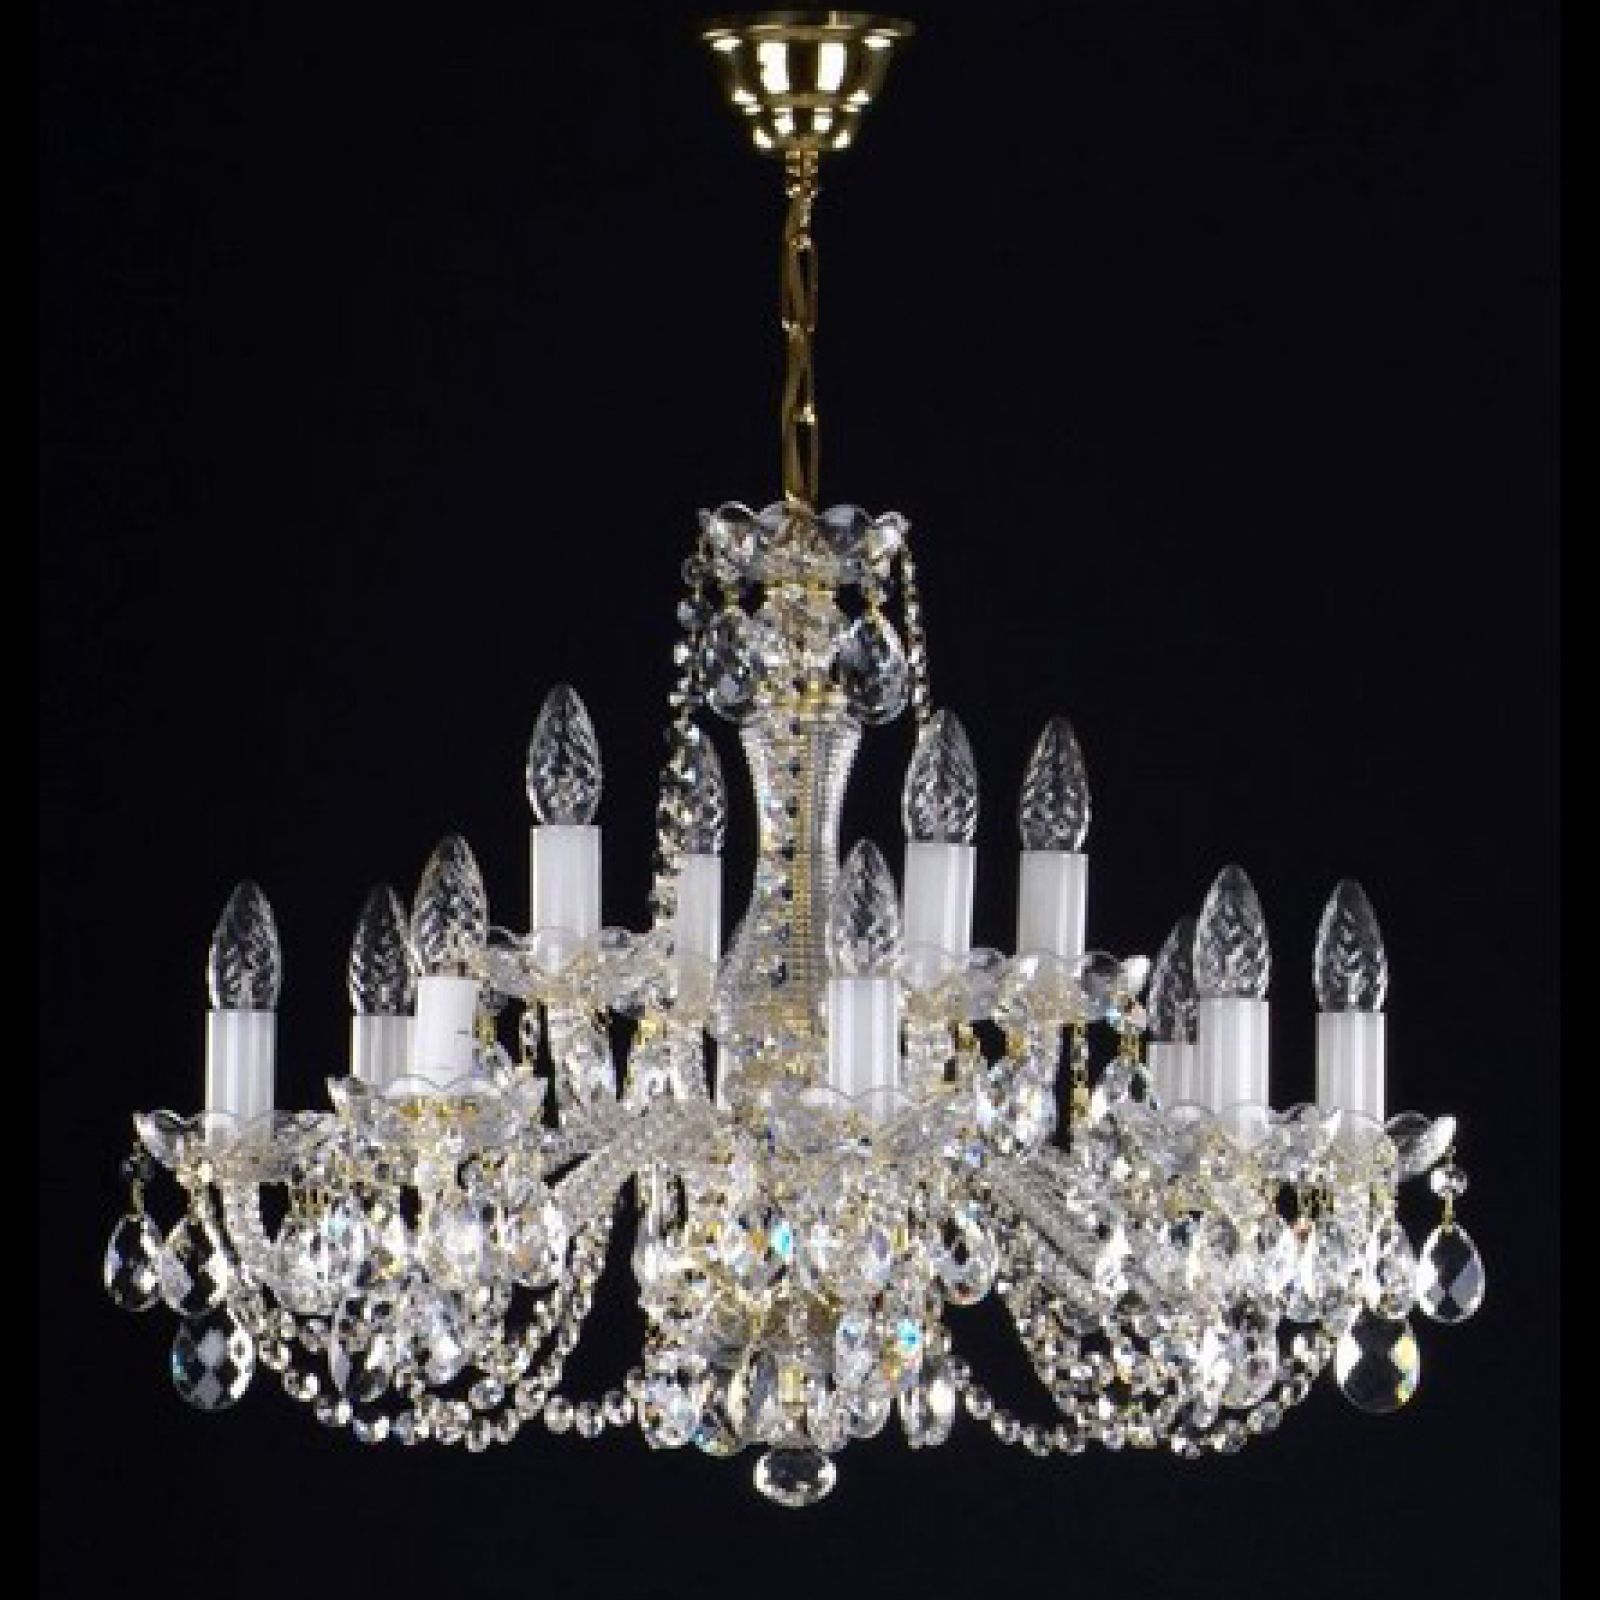 Stunning medium 12 arm chandelier